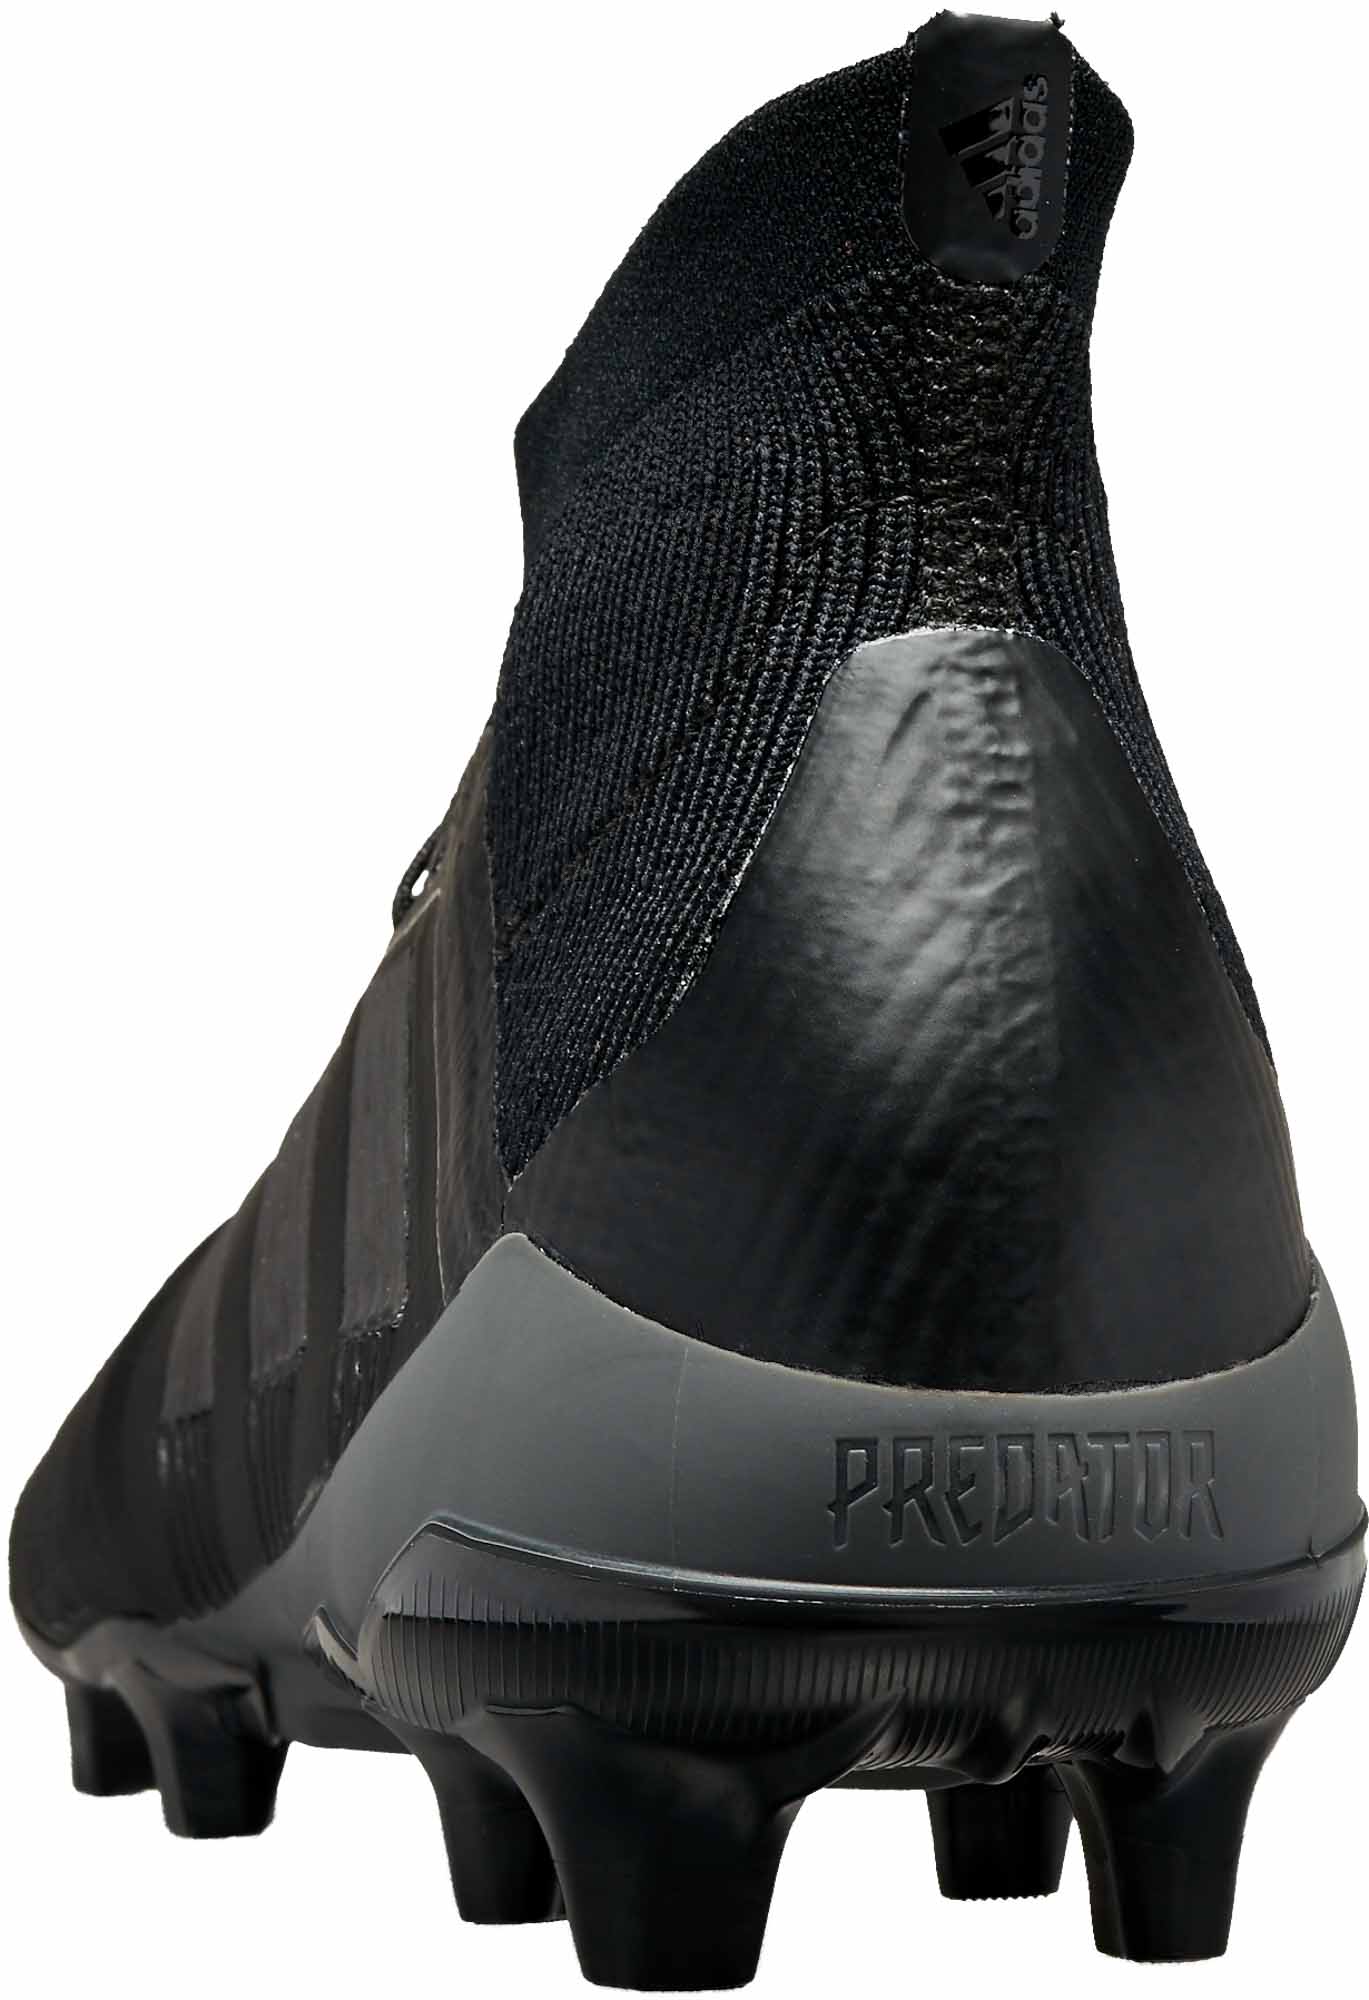 adidas predator 18.1 fg black